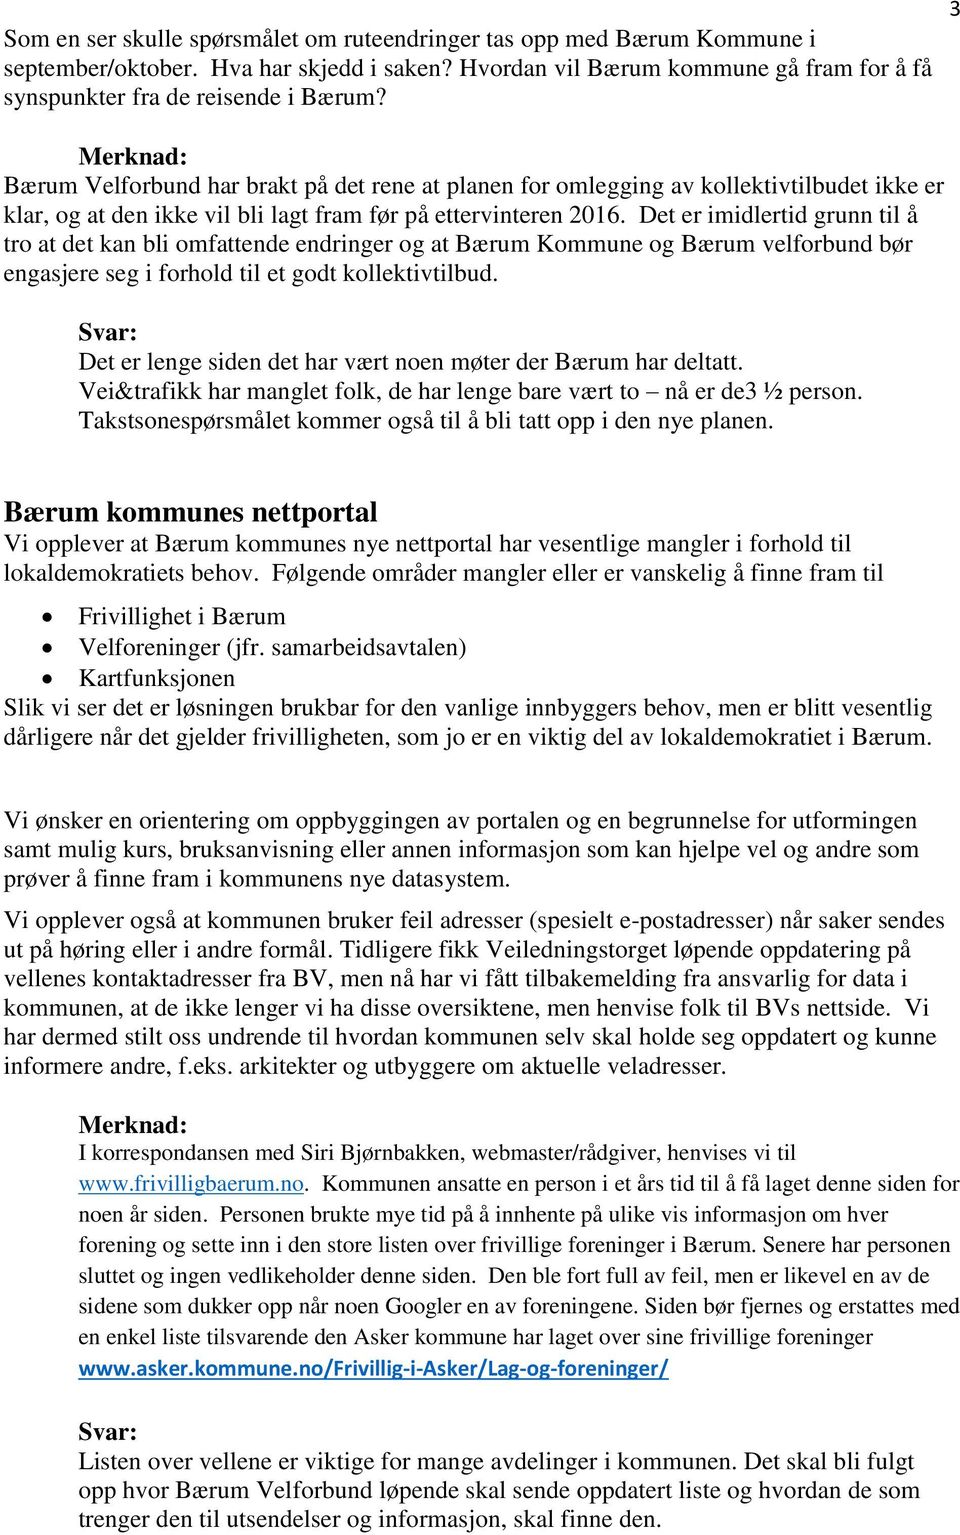 Det er imidlertid grunn til å tro at det kan bli omfattende endringer og at Bærum Kommune og Bærum velforbund bør engasjere seg i forhold til et godt kollektivtilbud.